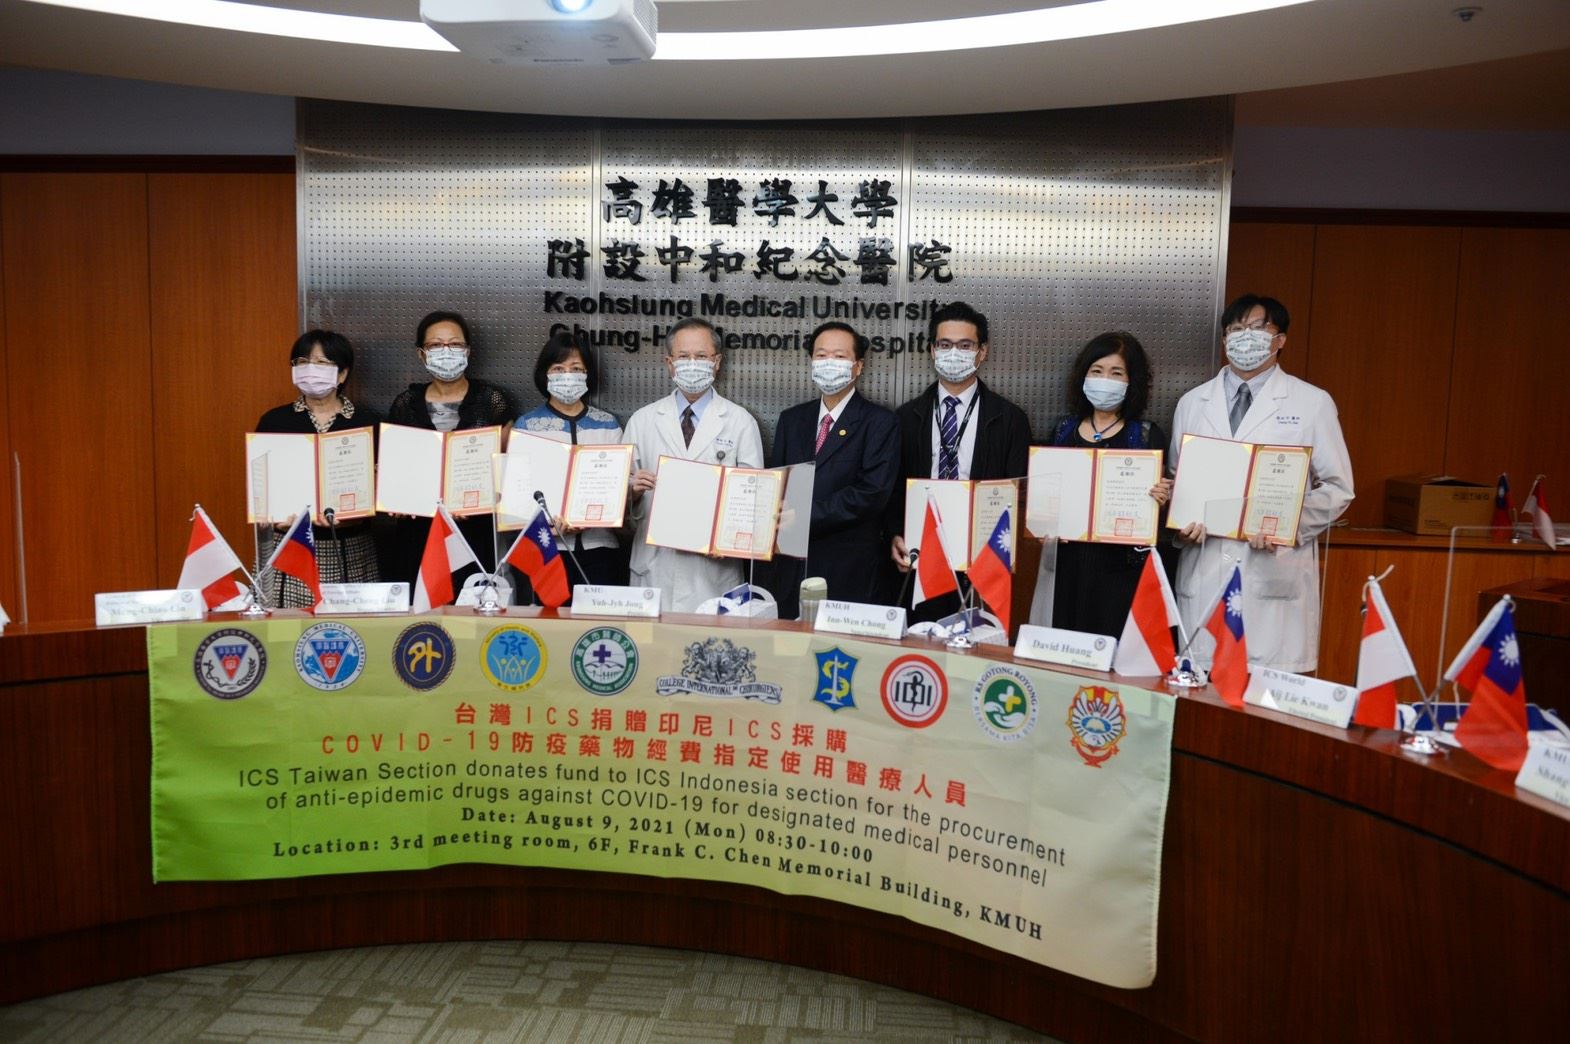 高醫附設中和紀念醫院院長鍾飲文(左4)致贈感謝狀給善心人士代表。